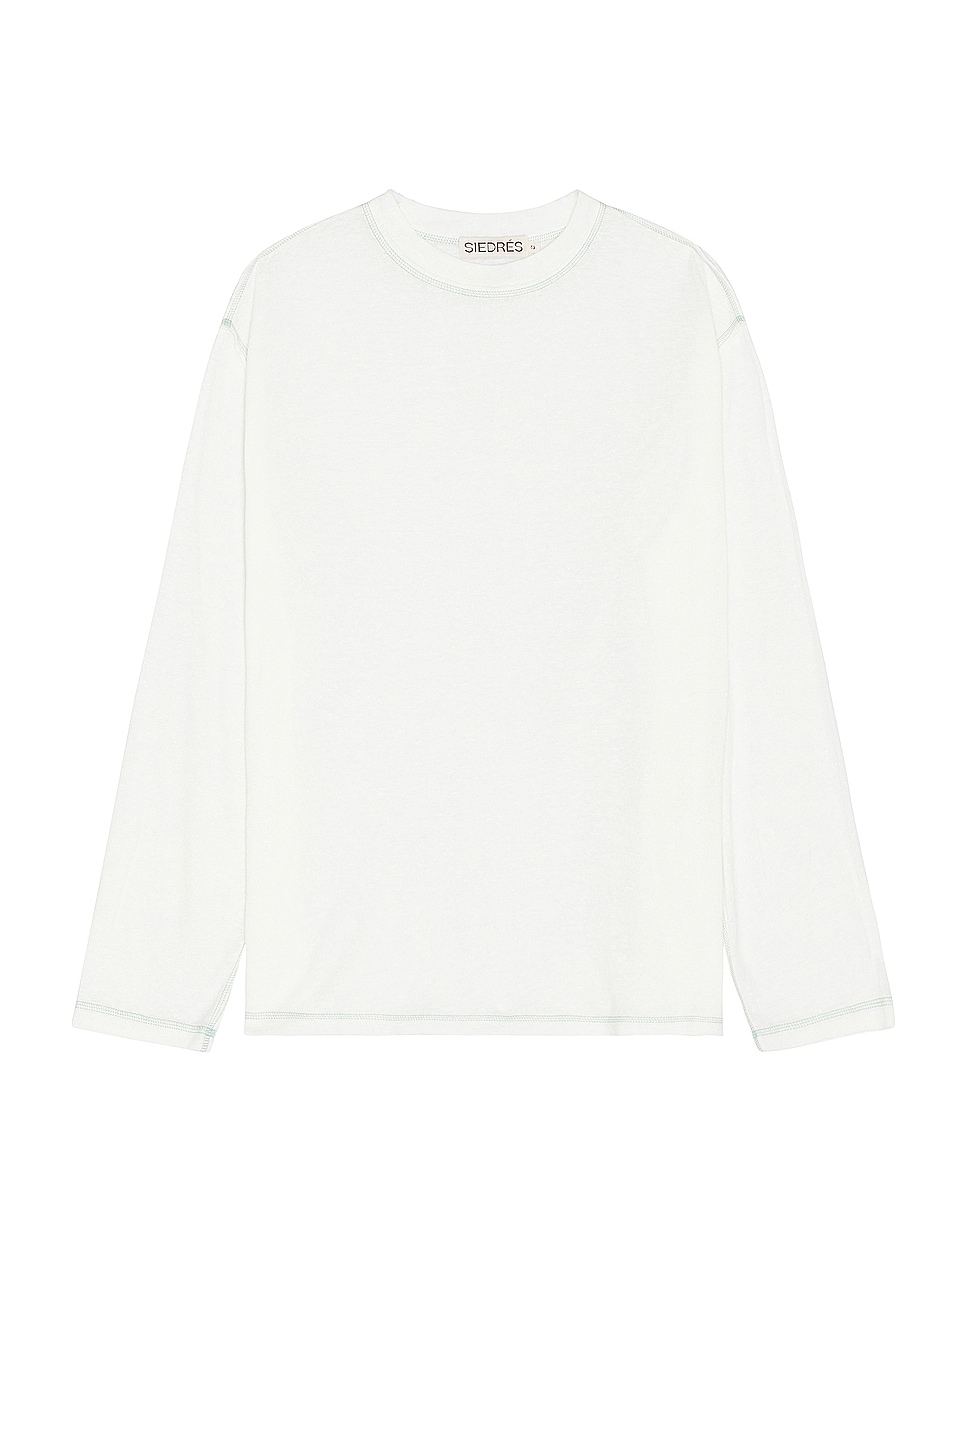 Image 1 of SIEDRES Devon Long Sleeve T-shirt in White